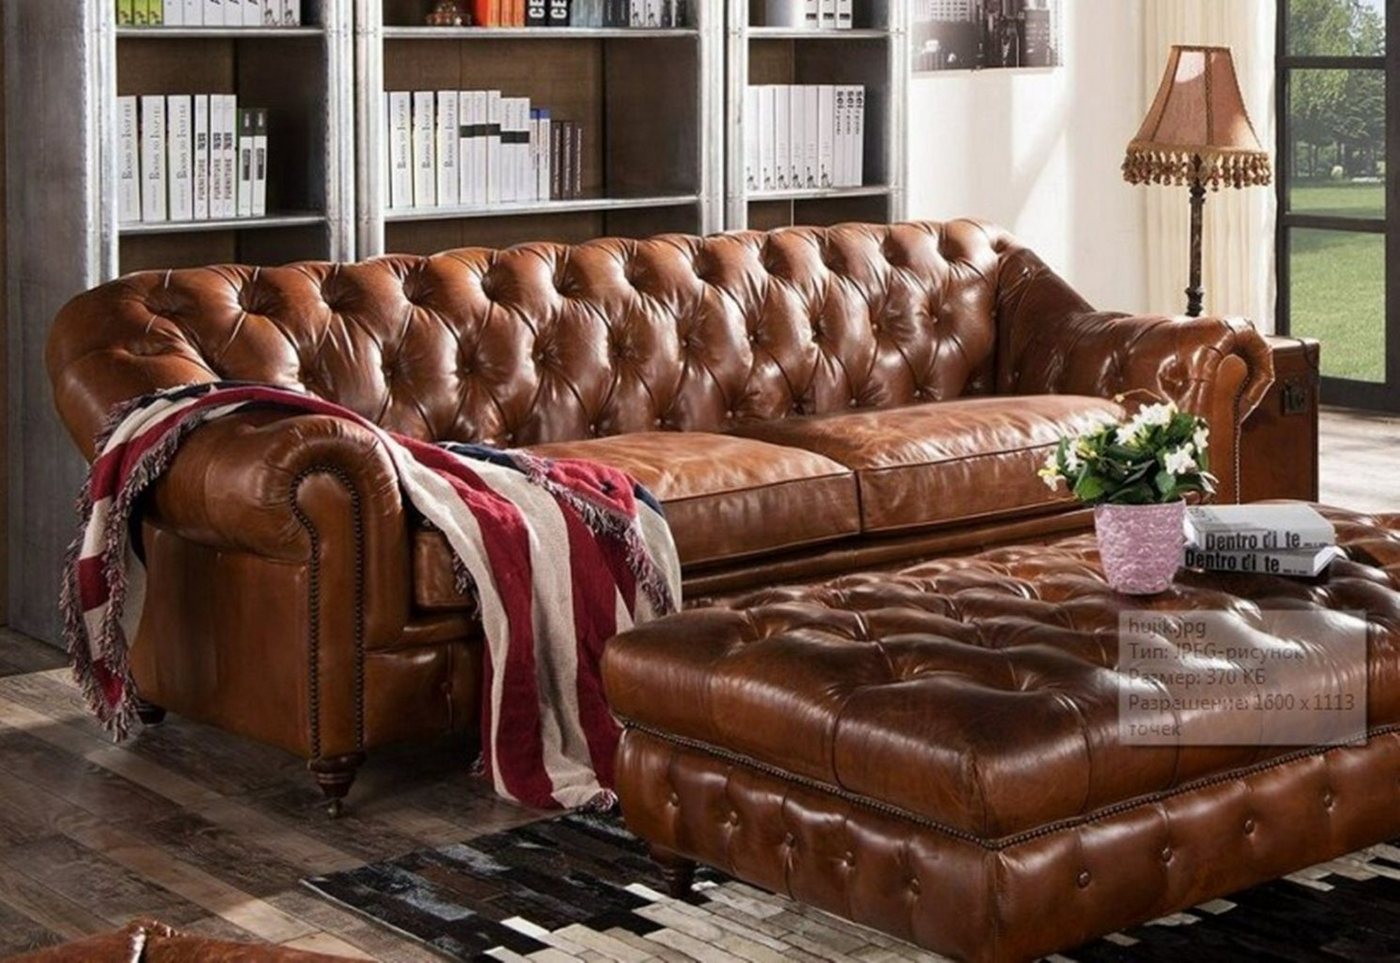 JVmoebel Sofa, Design Chesterfield Dreisitzer 3 Sitzer Leder Couch Polster Sofas von JVmoebel